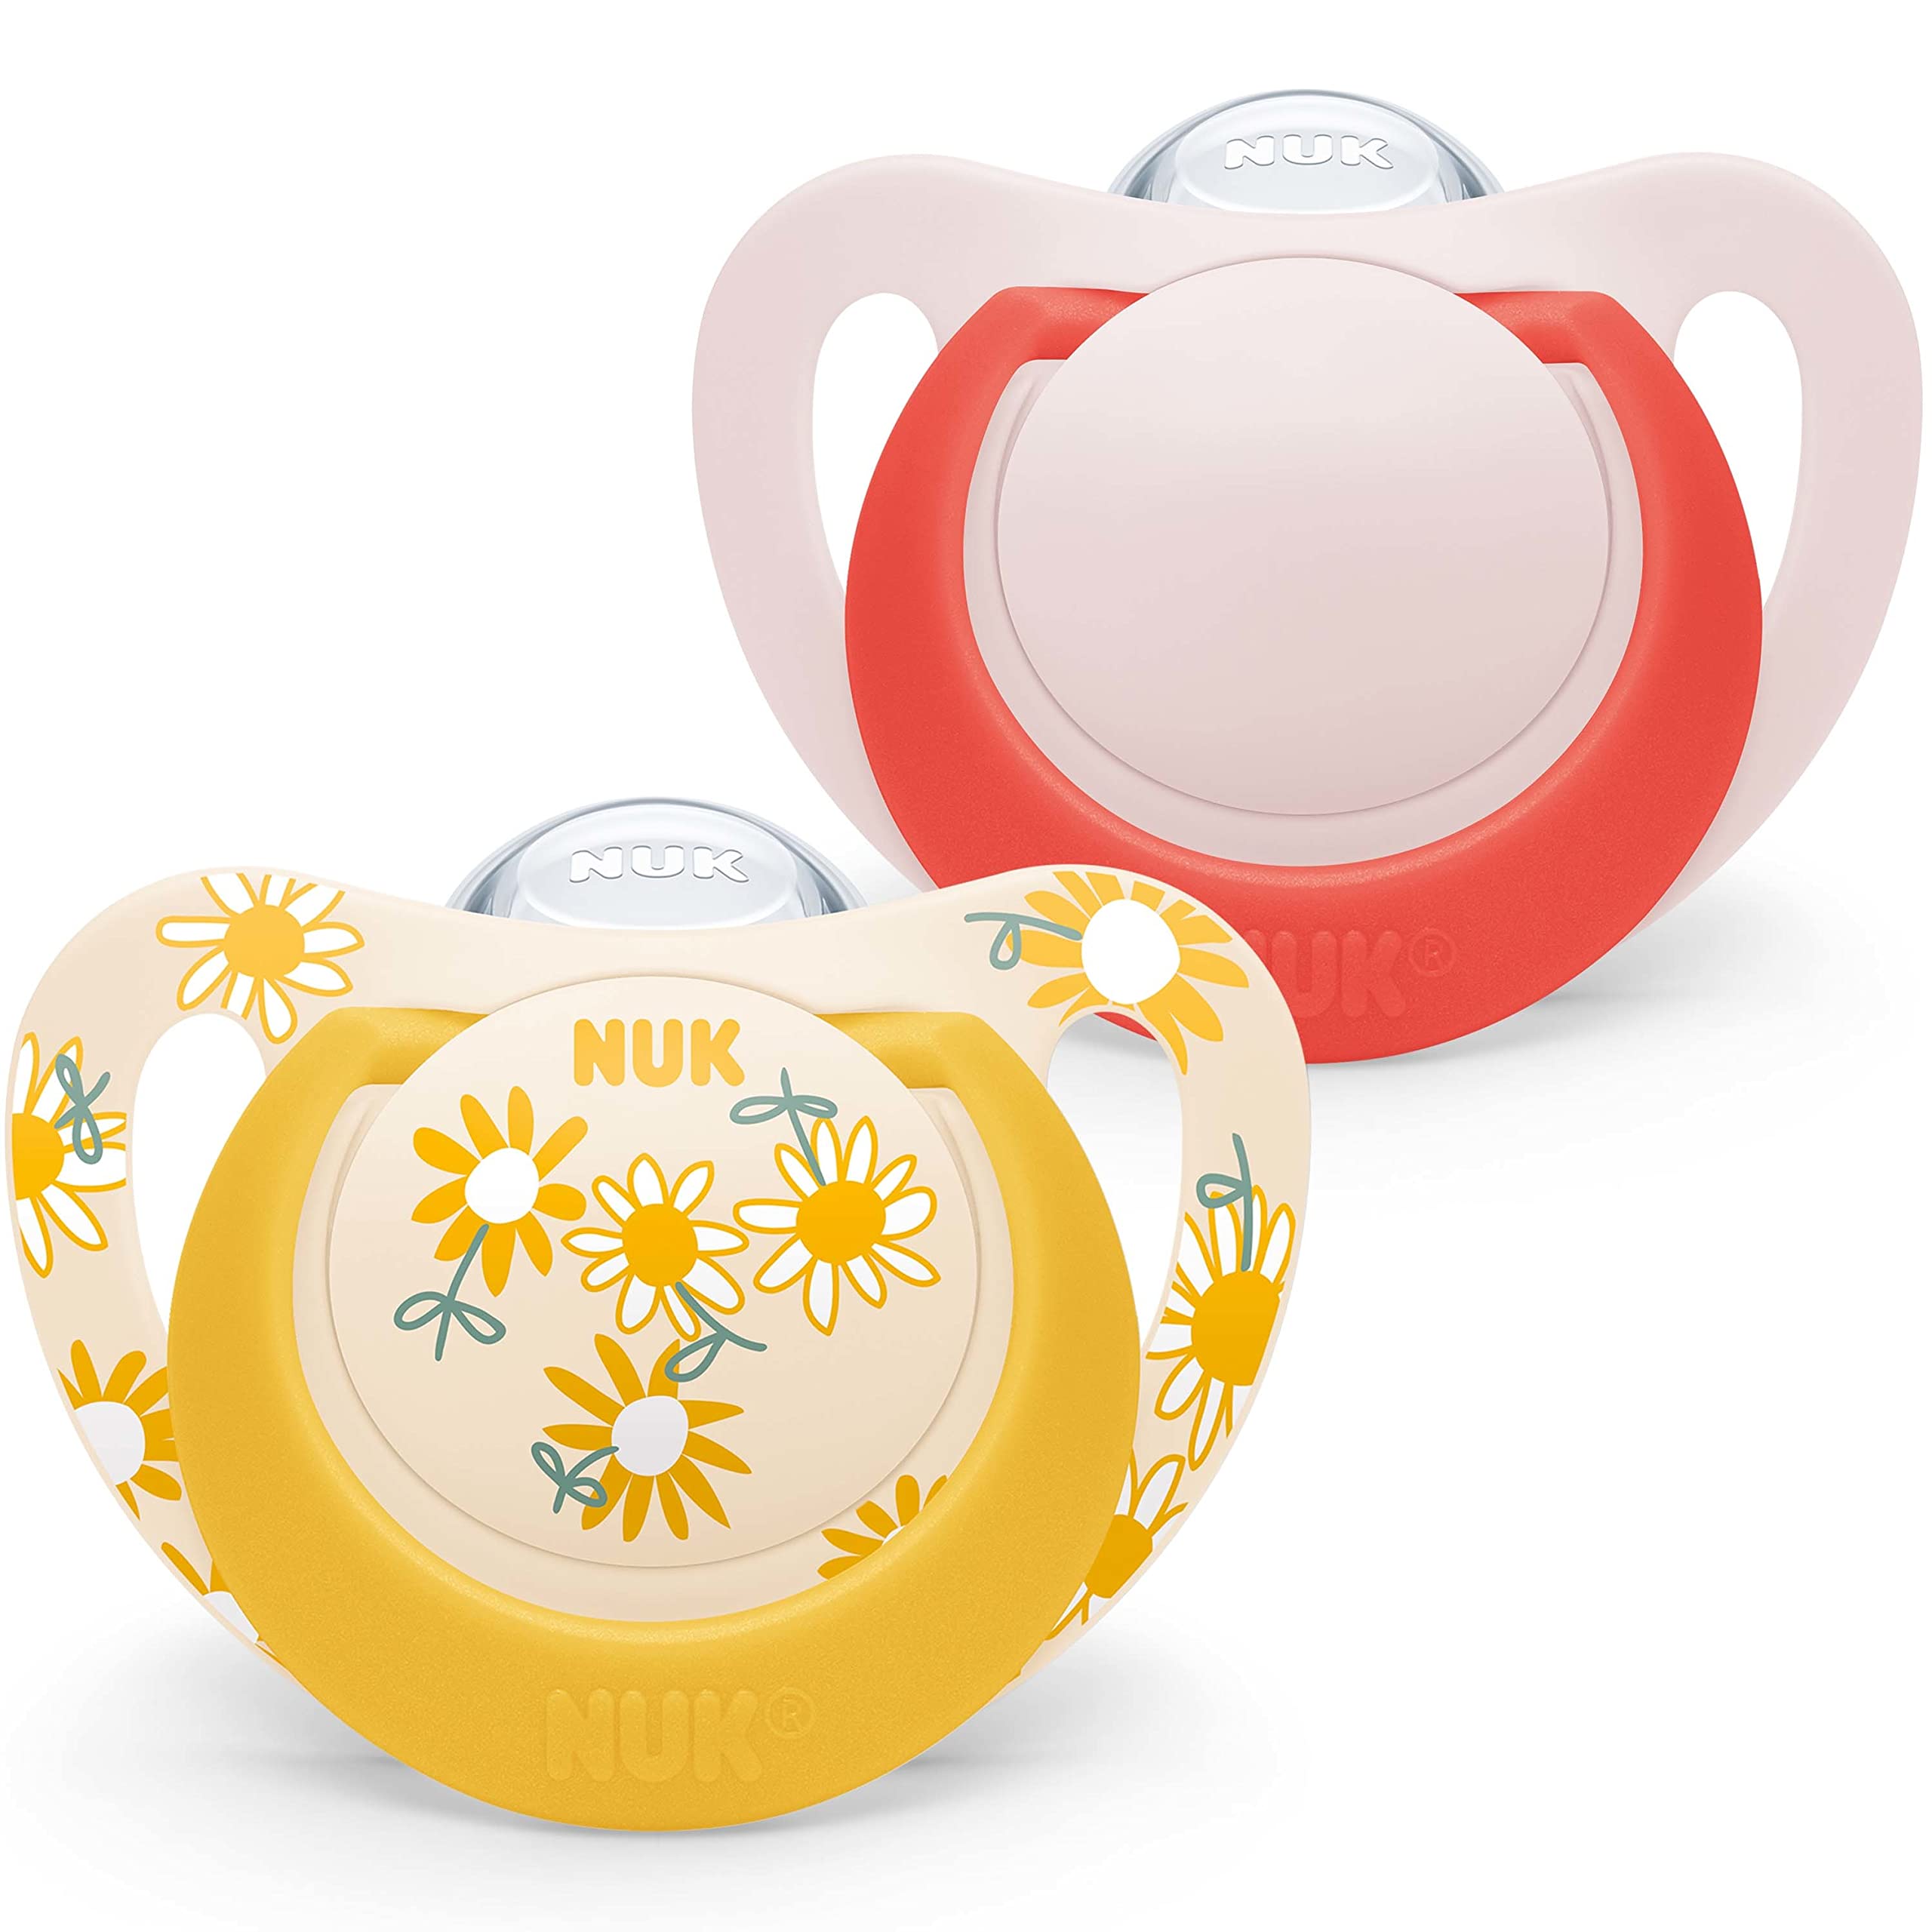 stylé  NUK Star Lot de 2 tétines en silicone sans BPA pour bébé de 18 à 36 mois Motif fleurs jaunes A2Q8ulBvg tout pour vous